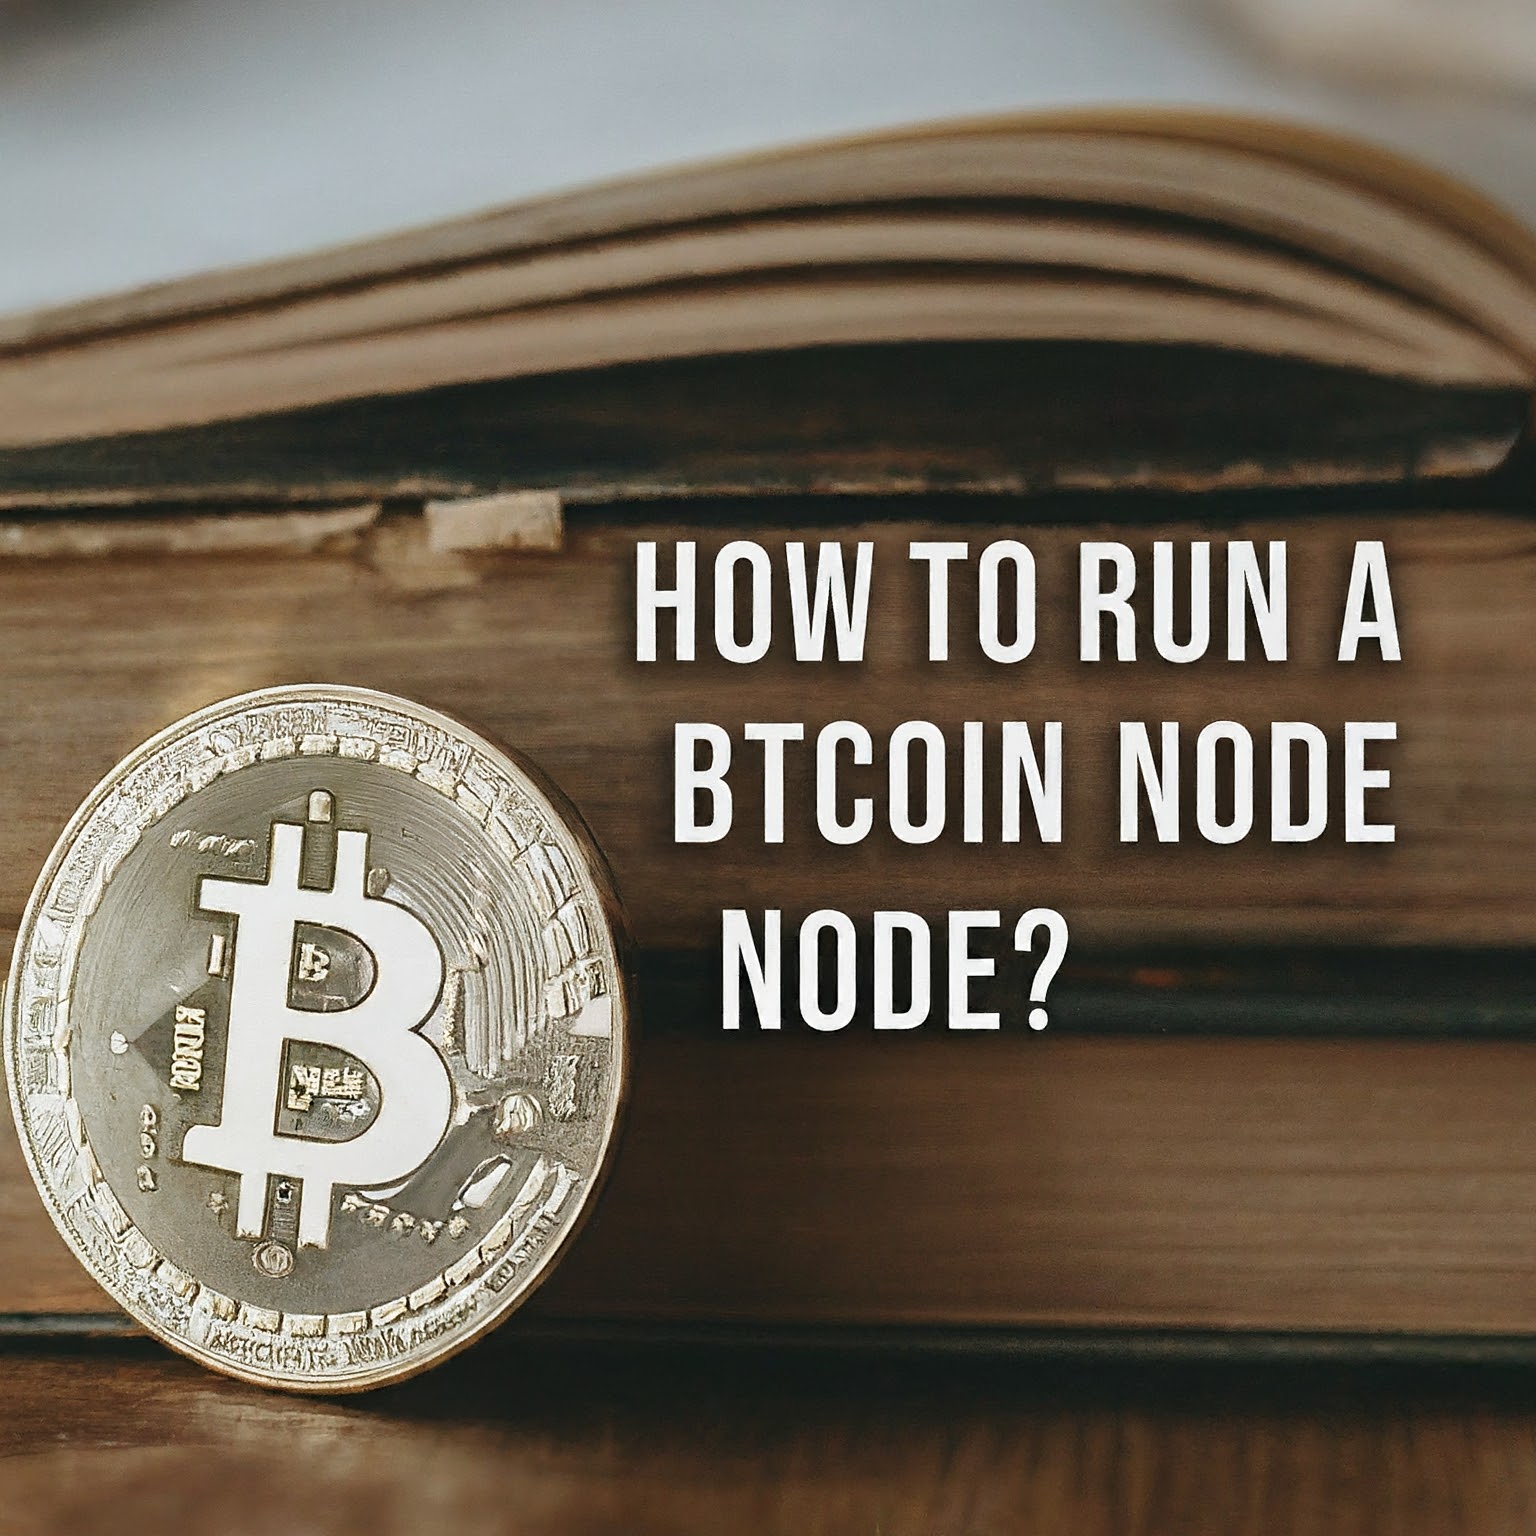 How to Run a Bitcoin Node?